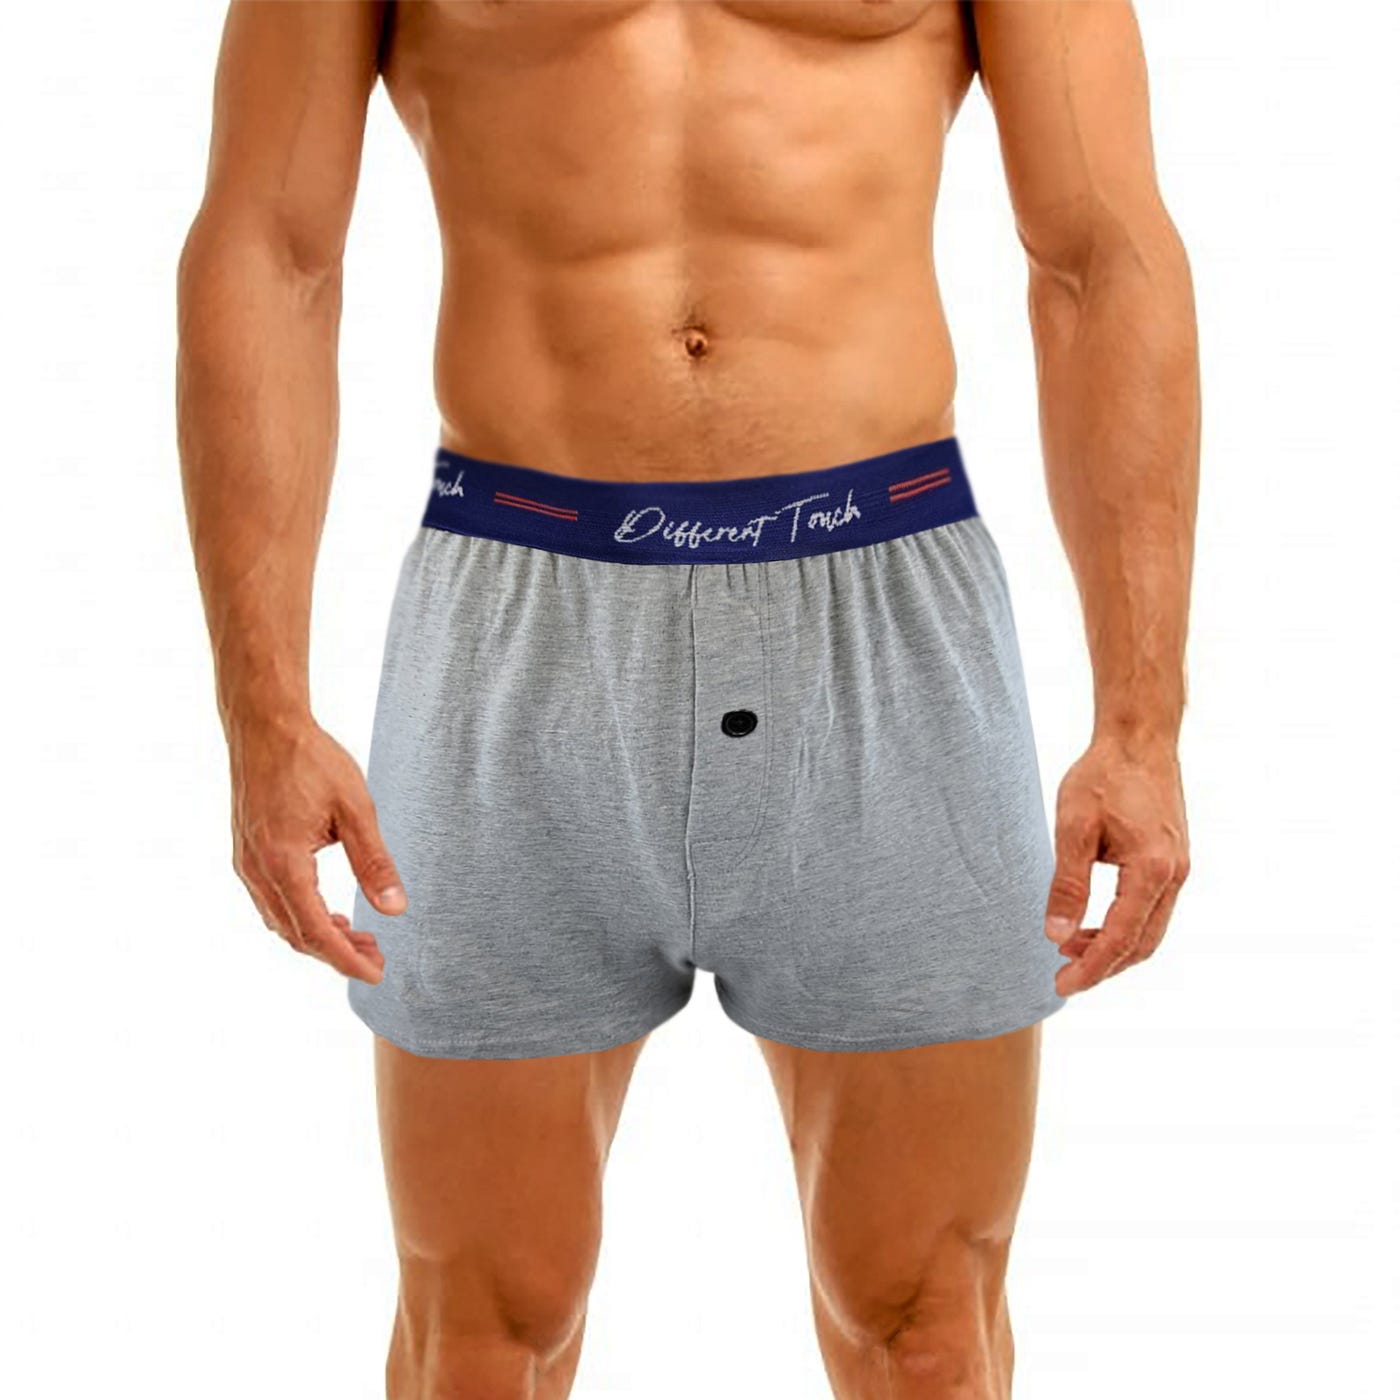 Men in undies, A segment on finding men the best underwear …